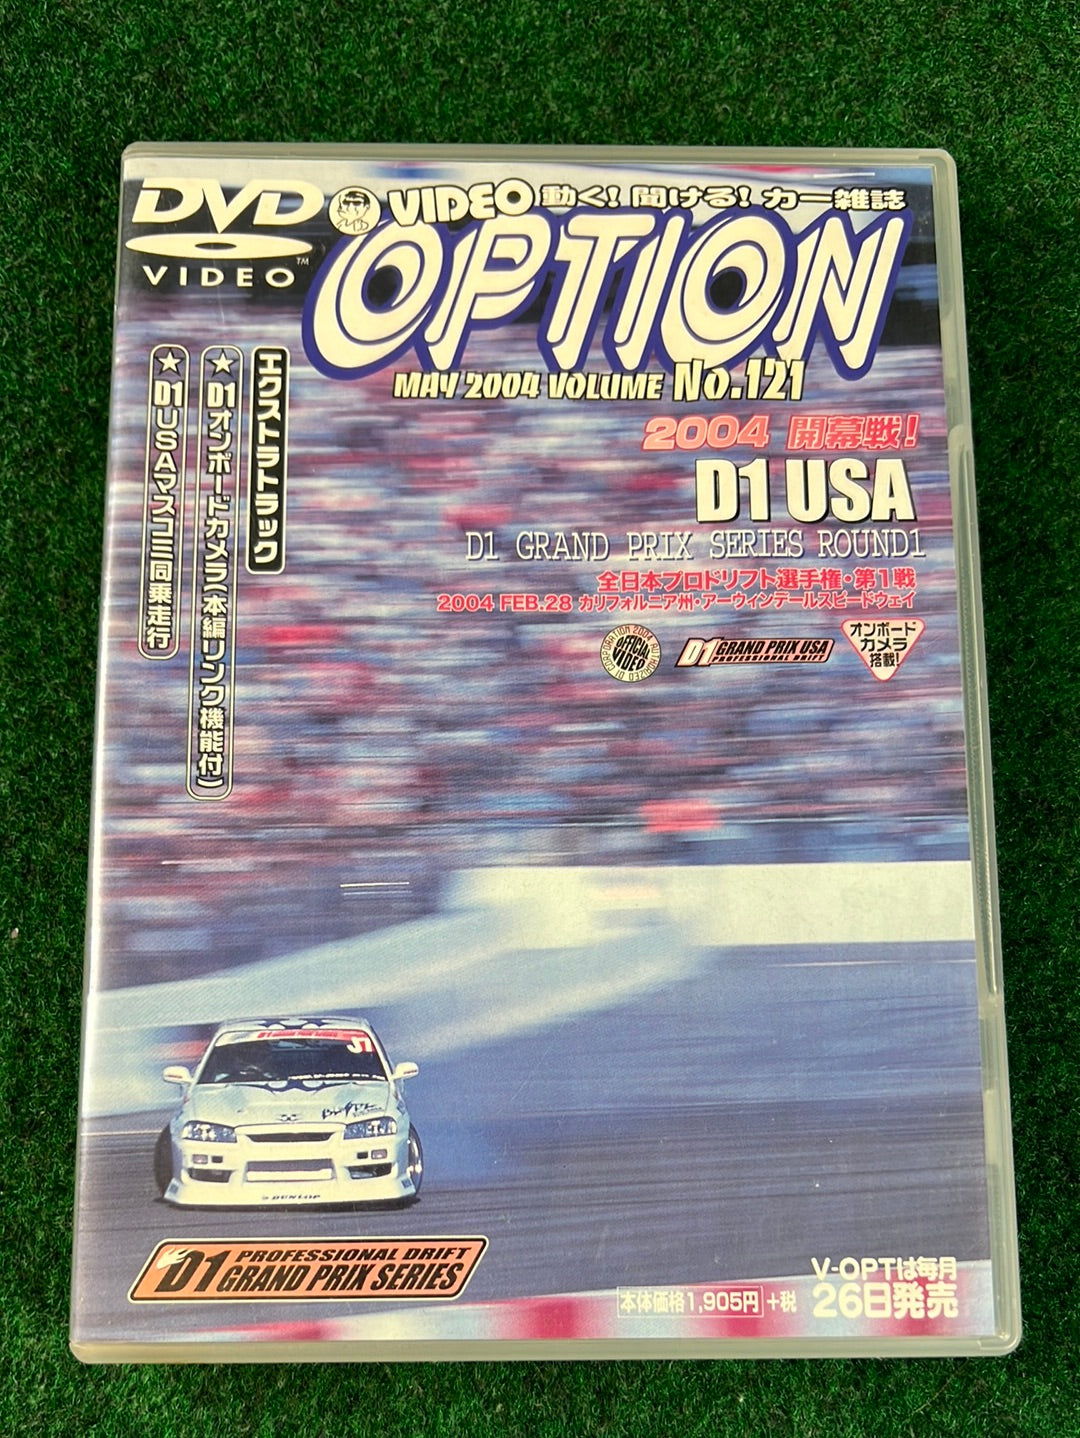 Option Video DVD - D1 Grand Prix Series Rd.1 USA 2004 Vol. 121 DVD